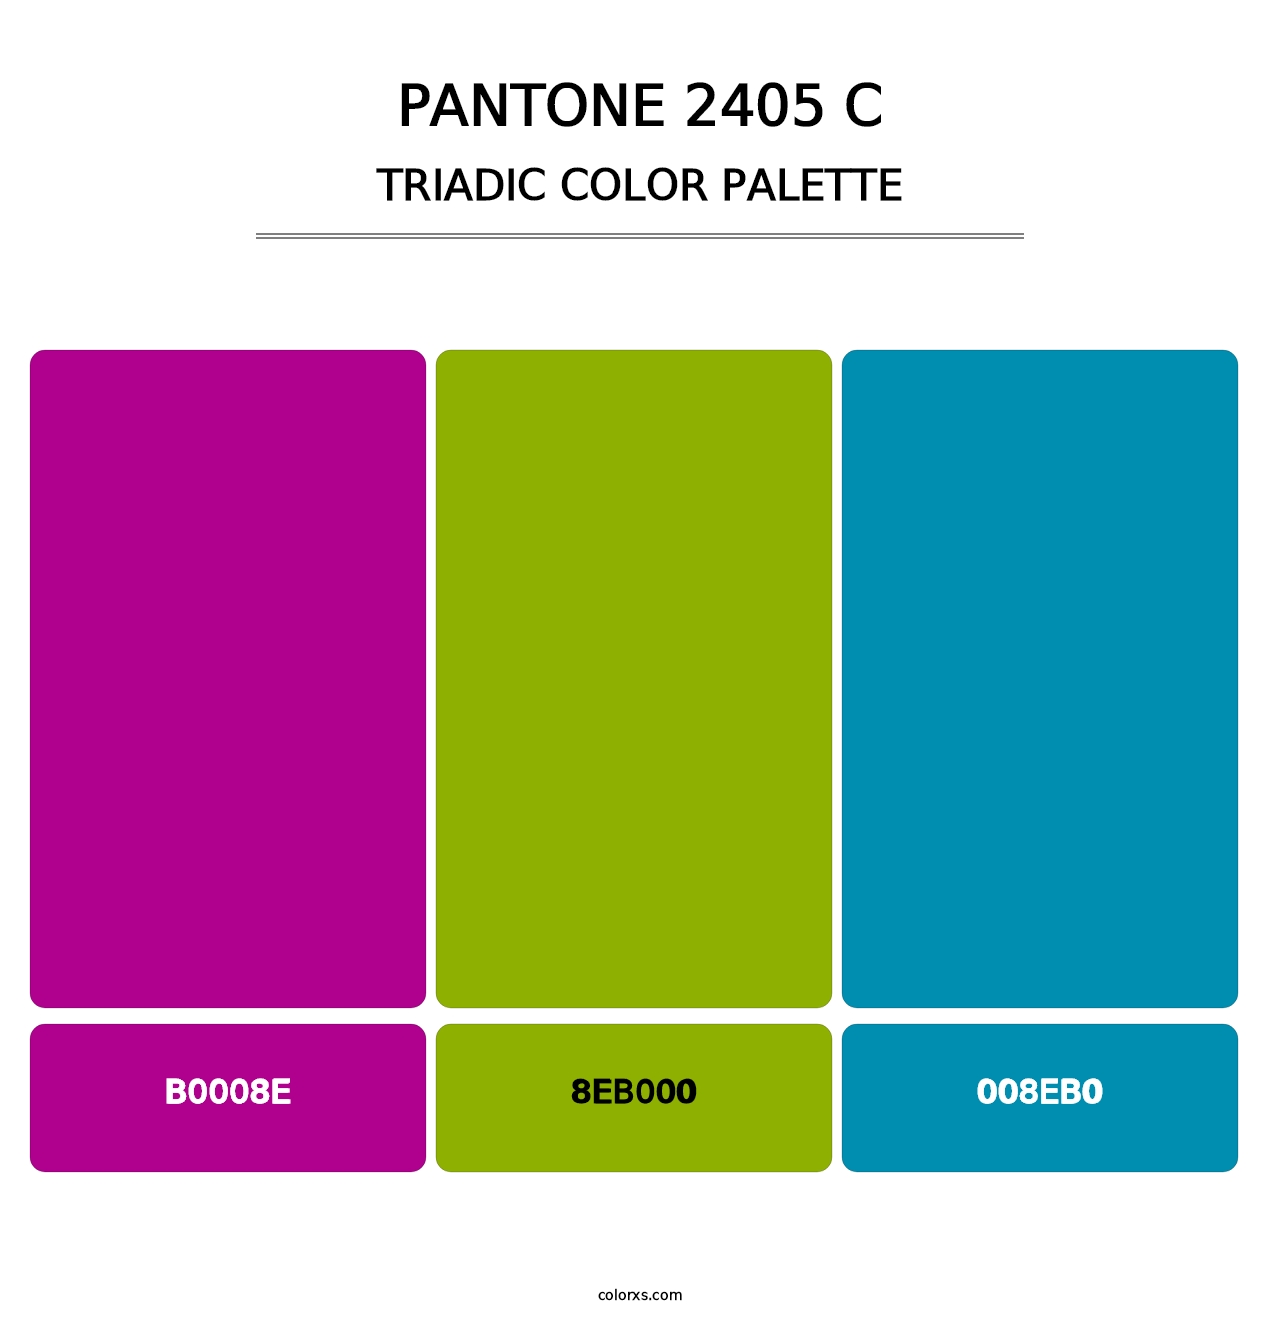 PANTONE 2405 C - Triadic Color Palette